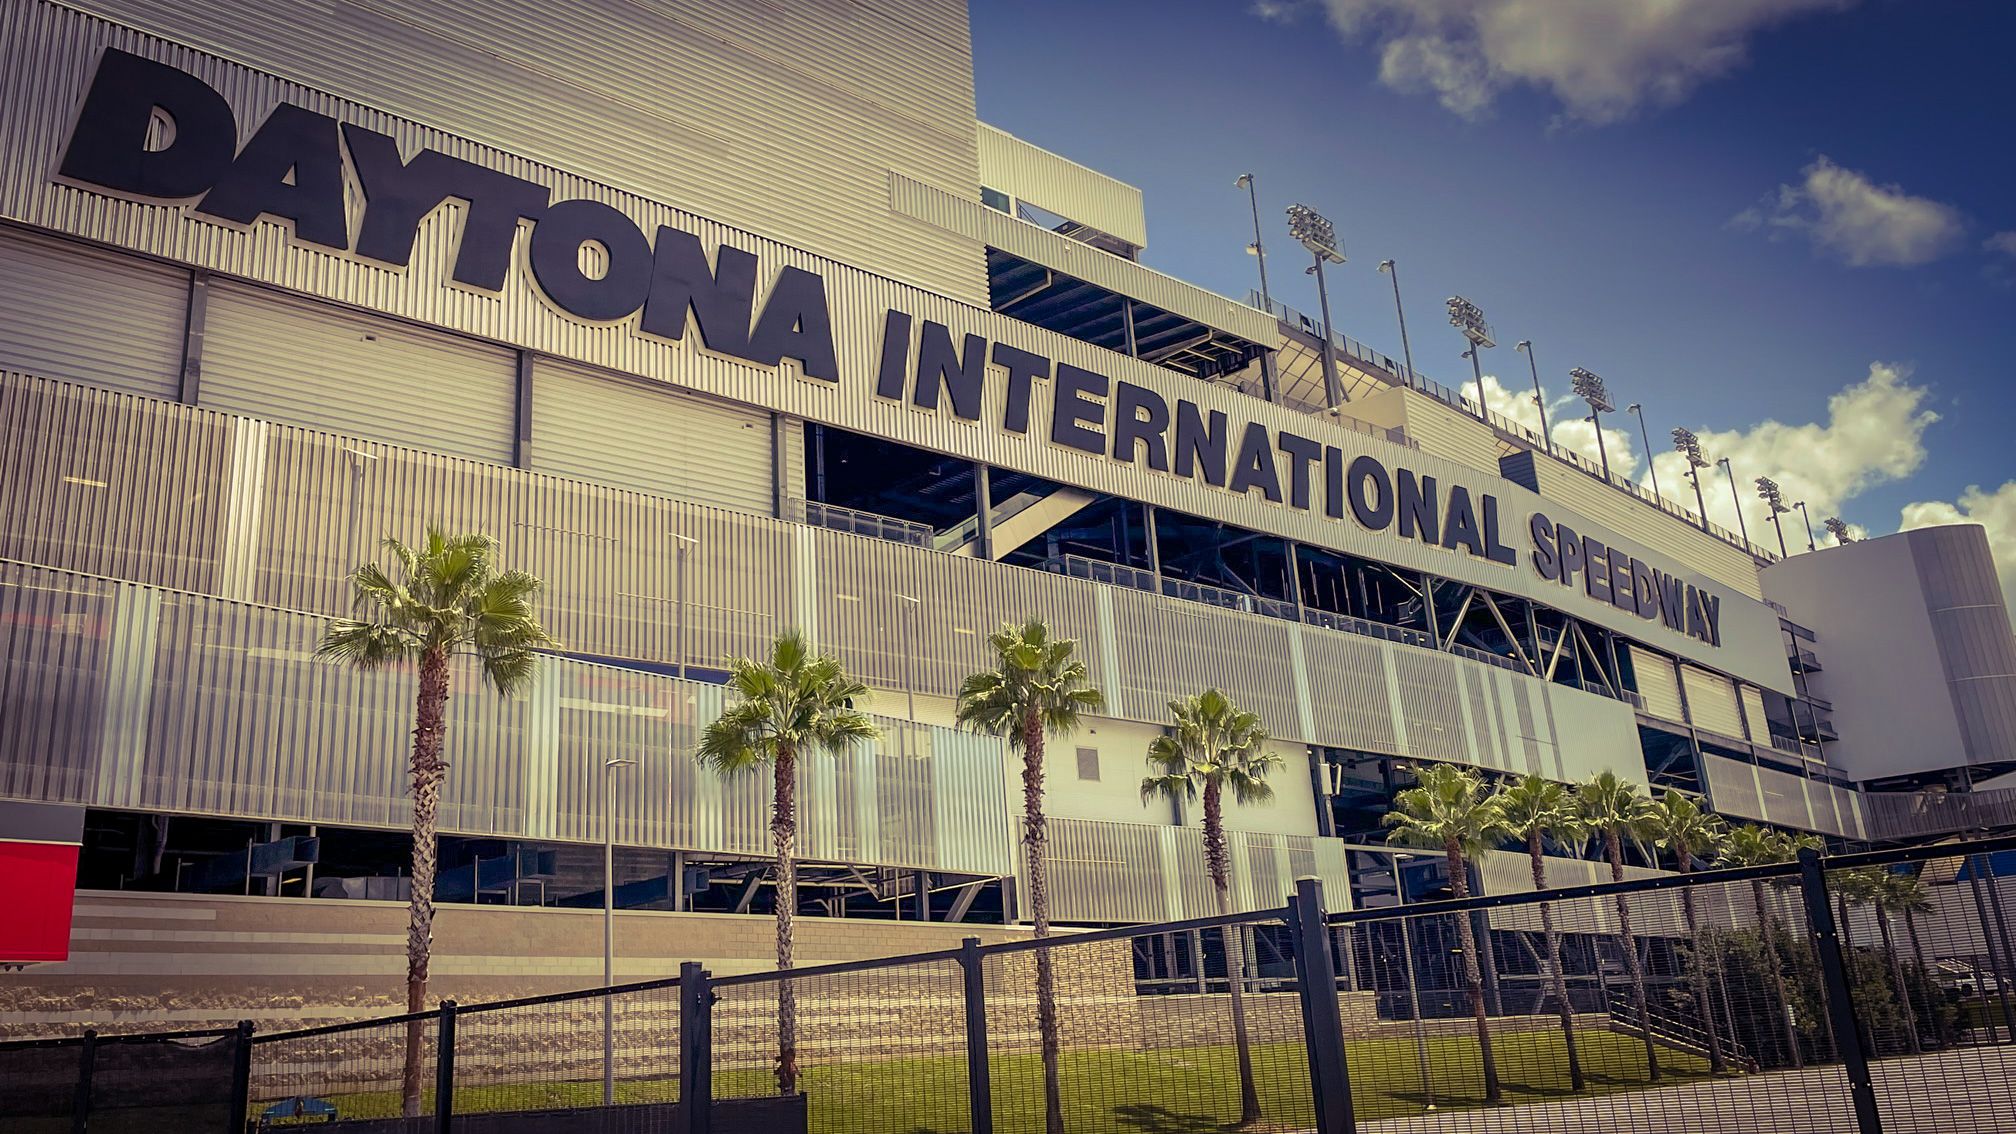 A Daytona International Speedway lehet a Jacksonville Jaguars ideiglenes otthona (Fotó: Cselleng Ádám)